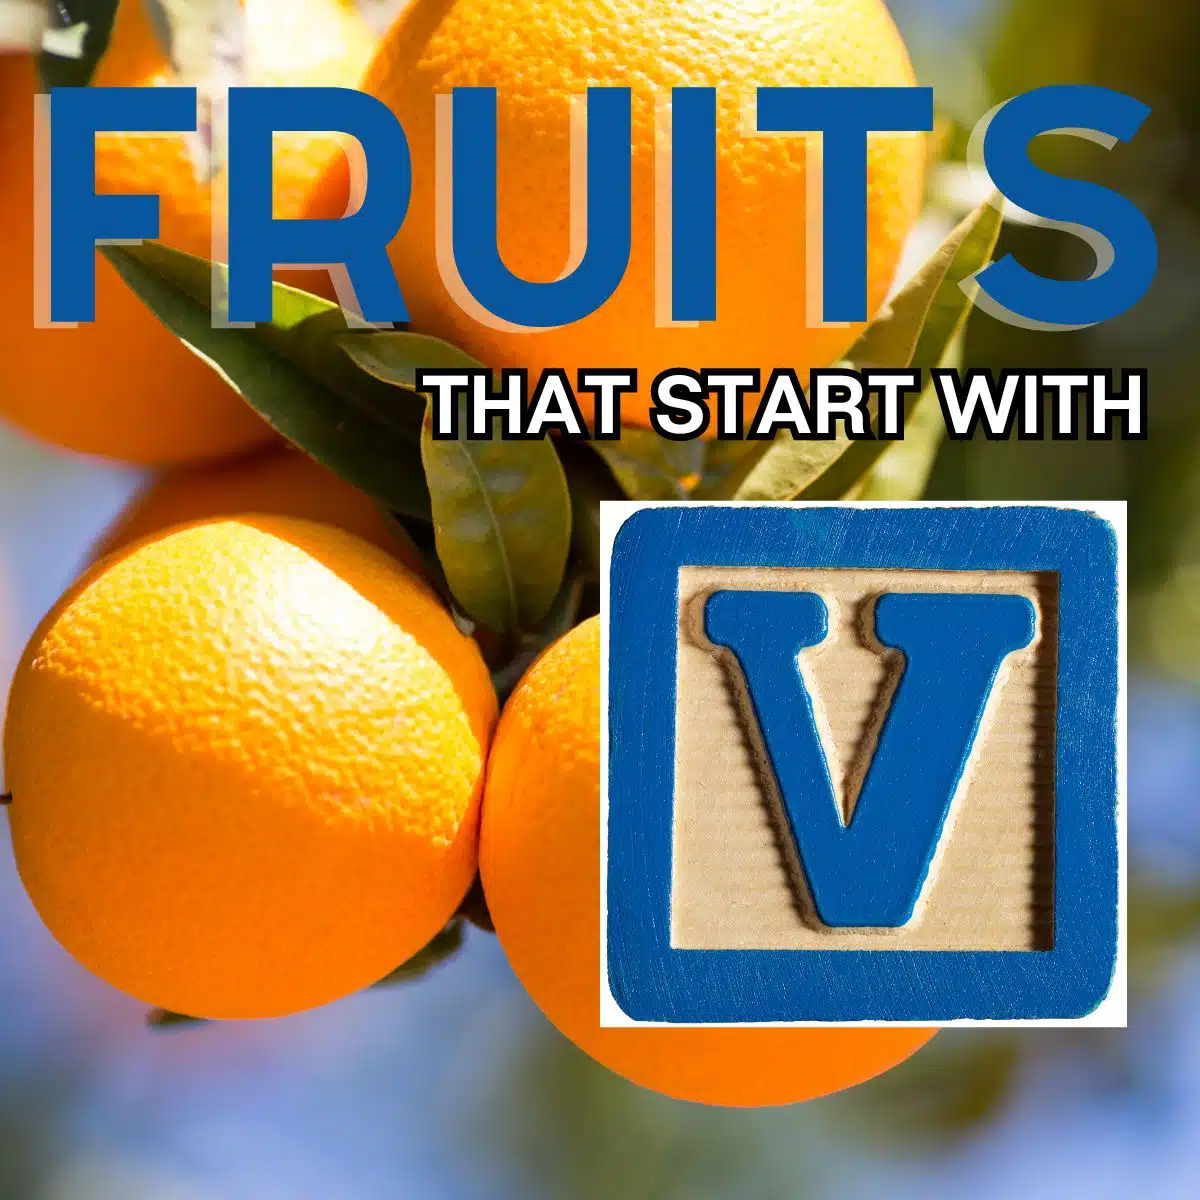 Čtvercový obrázek pro ovoce začínající písmenem V s ovocem Valencie.